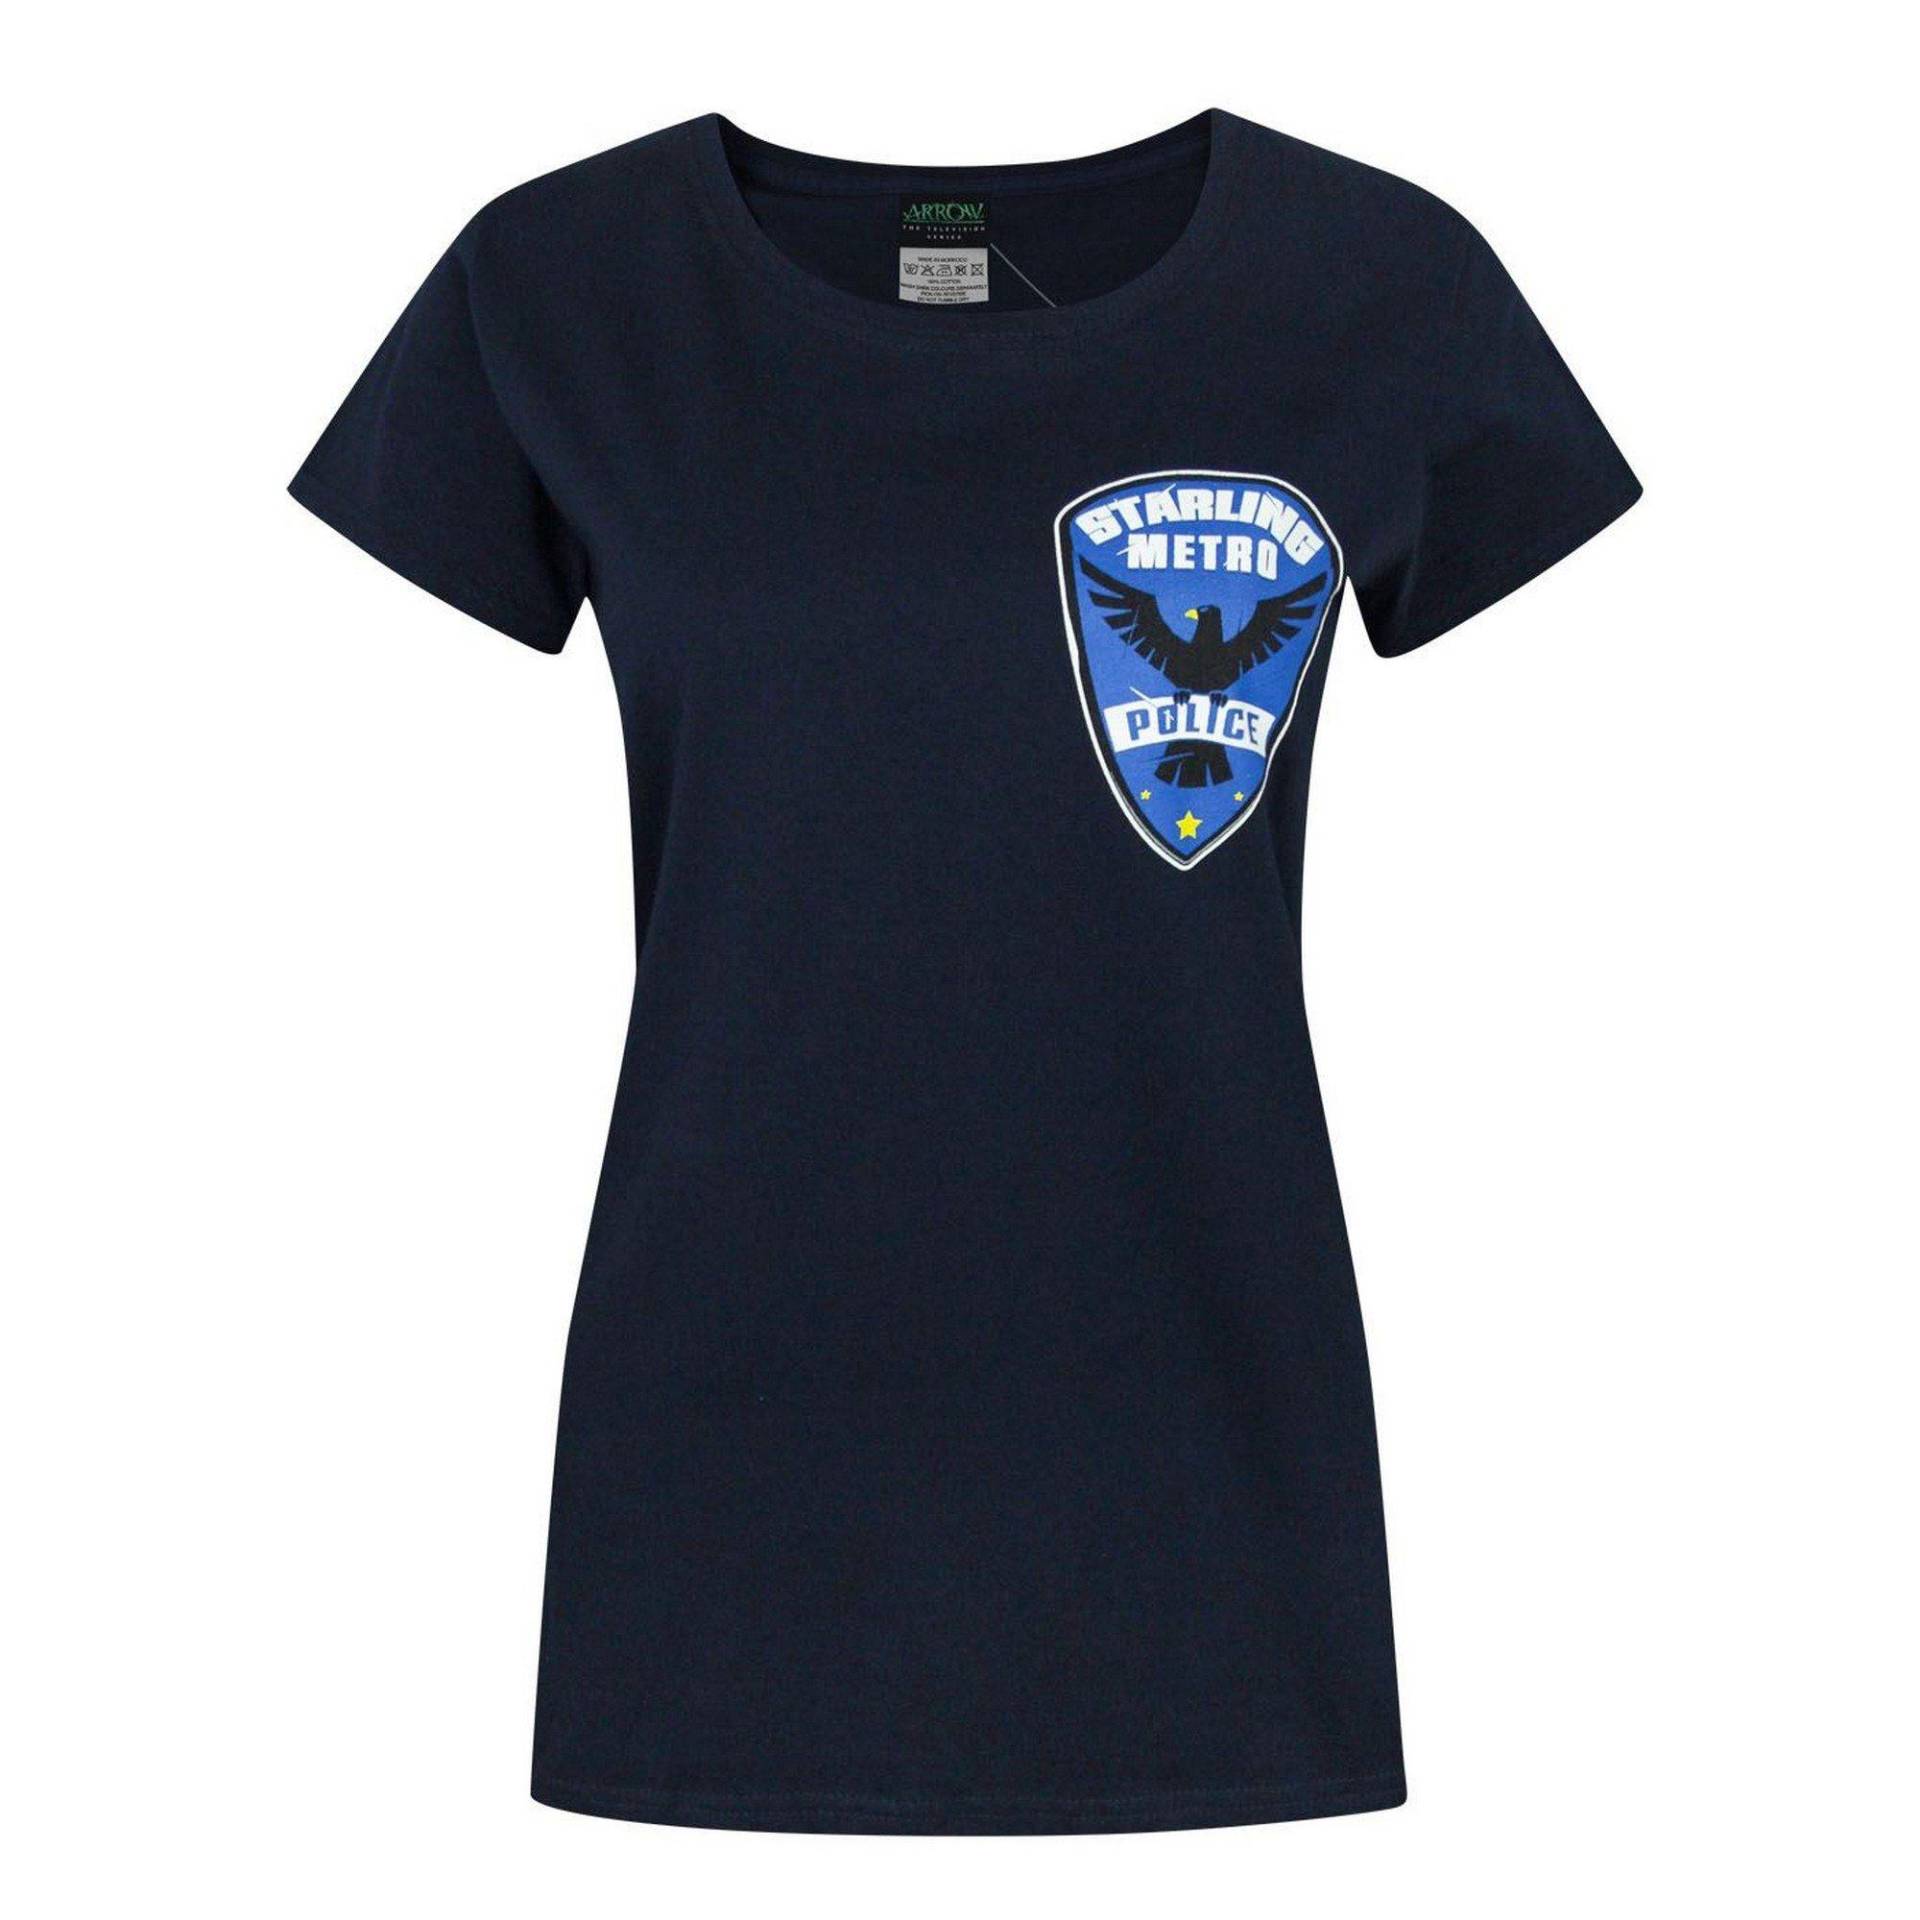 Tshirt Mit Starling City Metro Police Design Damen Blau XXL von ARROW